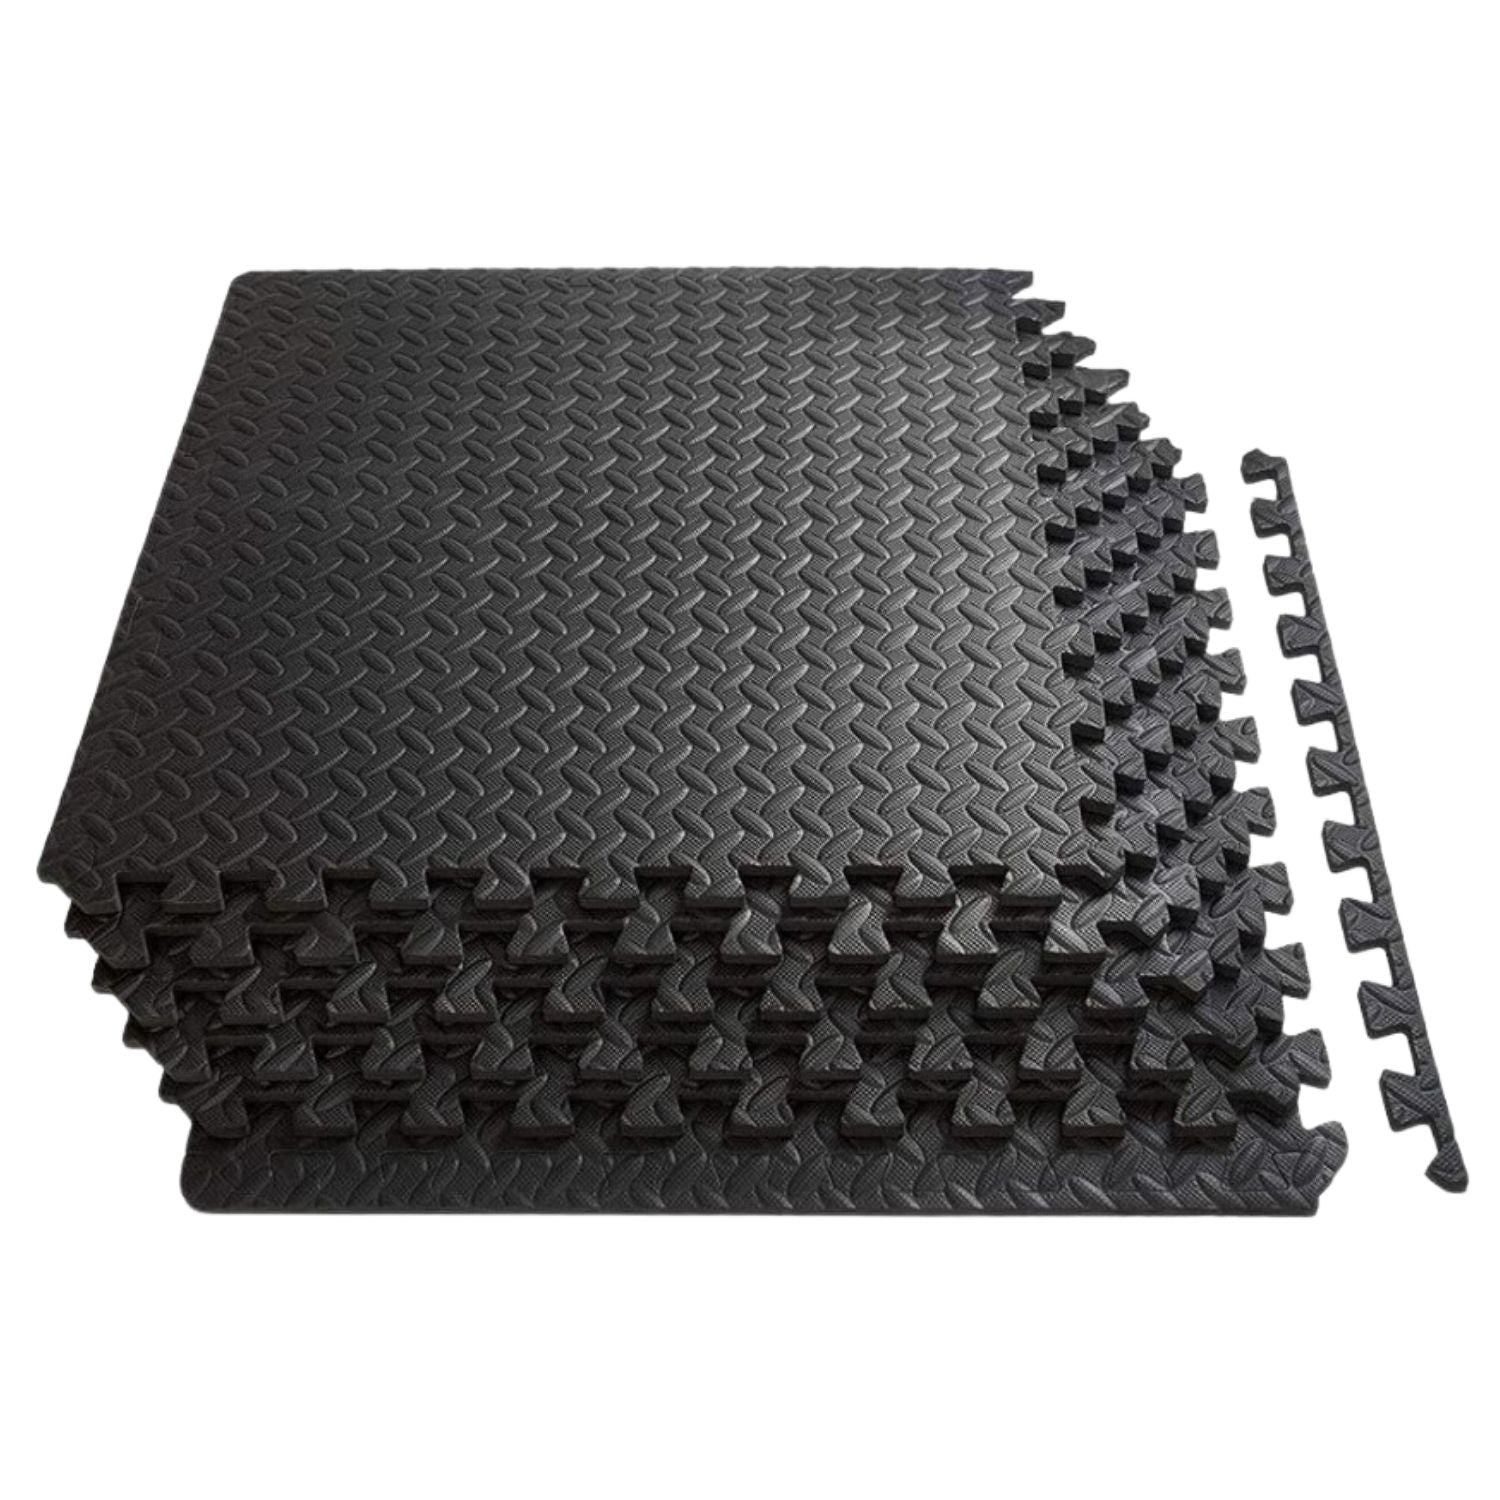 Verpeak Puzzle Gym Mat EVA Interlocking Foam Tiles with Border (Black)